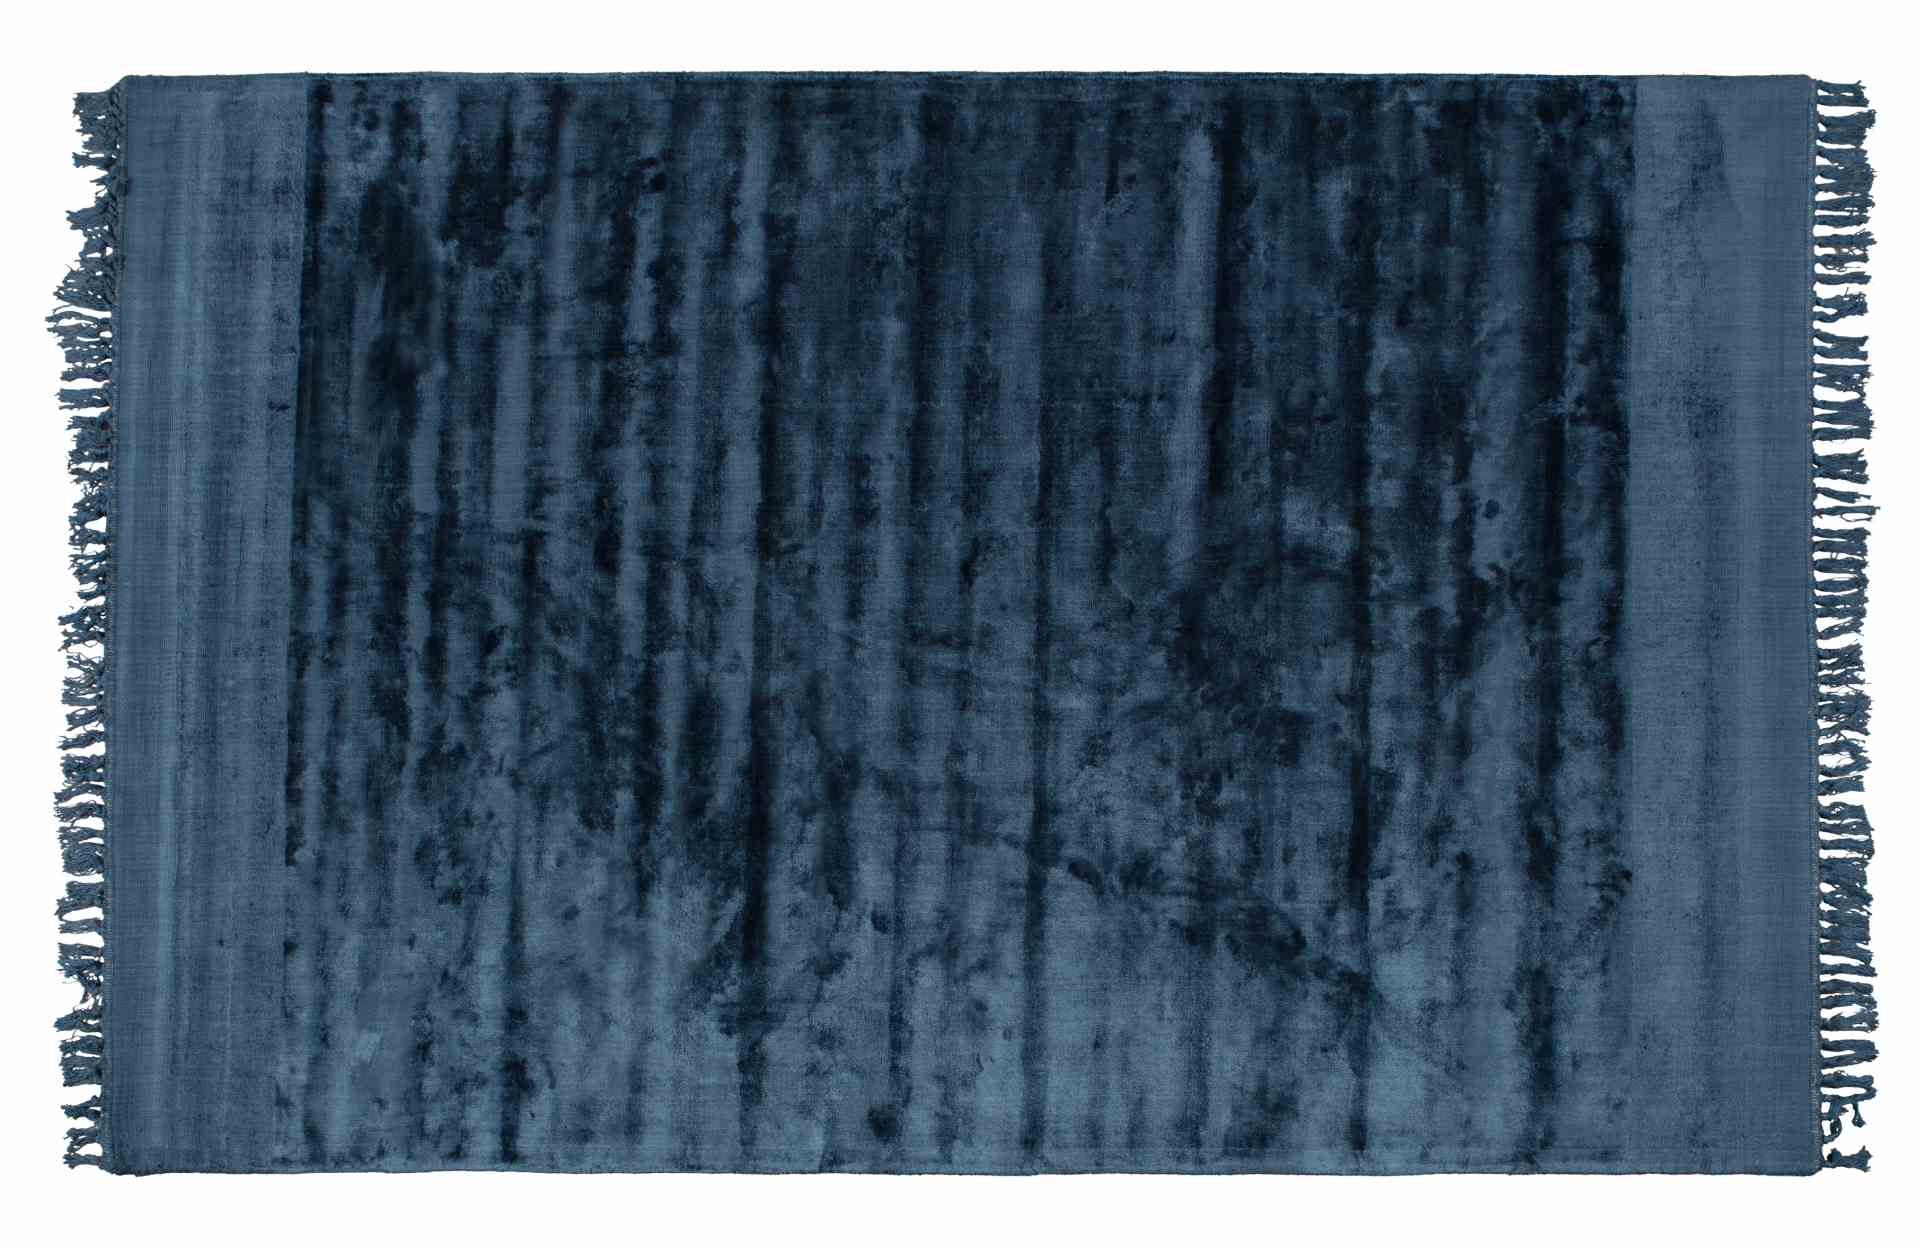 Der Teppich Sweep überzeugt mit seinem modernen Design. Gefertigt wurde er aus einem Kombinationsgewebe aus Viskose und Baumwolle, welche einen blauen Farbton besitzt. Der Teppich besitzt eine Größe von 170x240 cm.